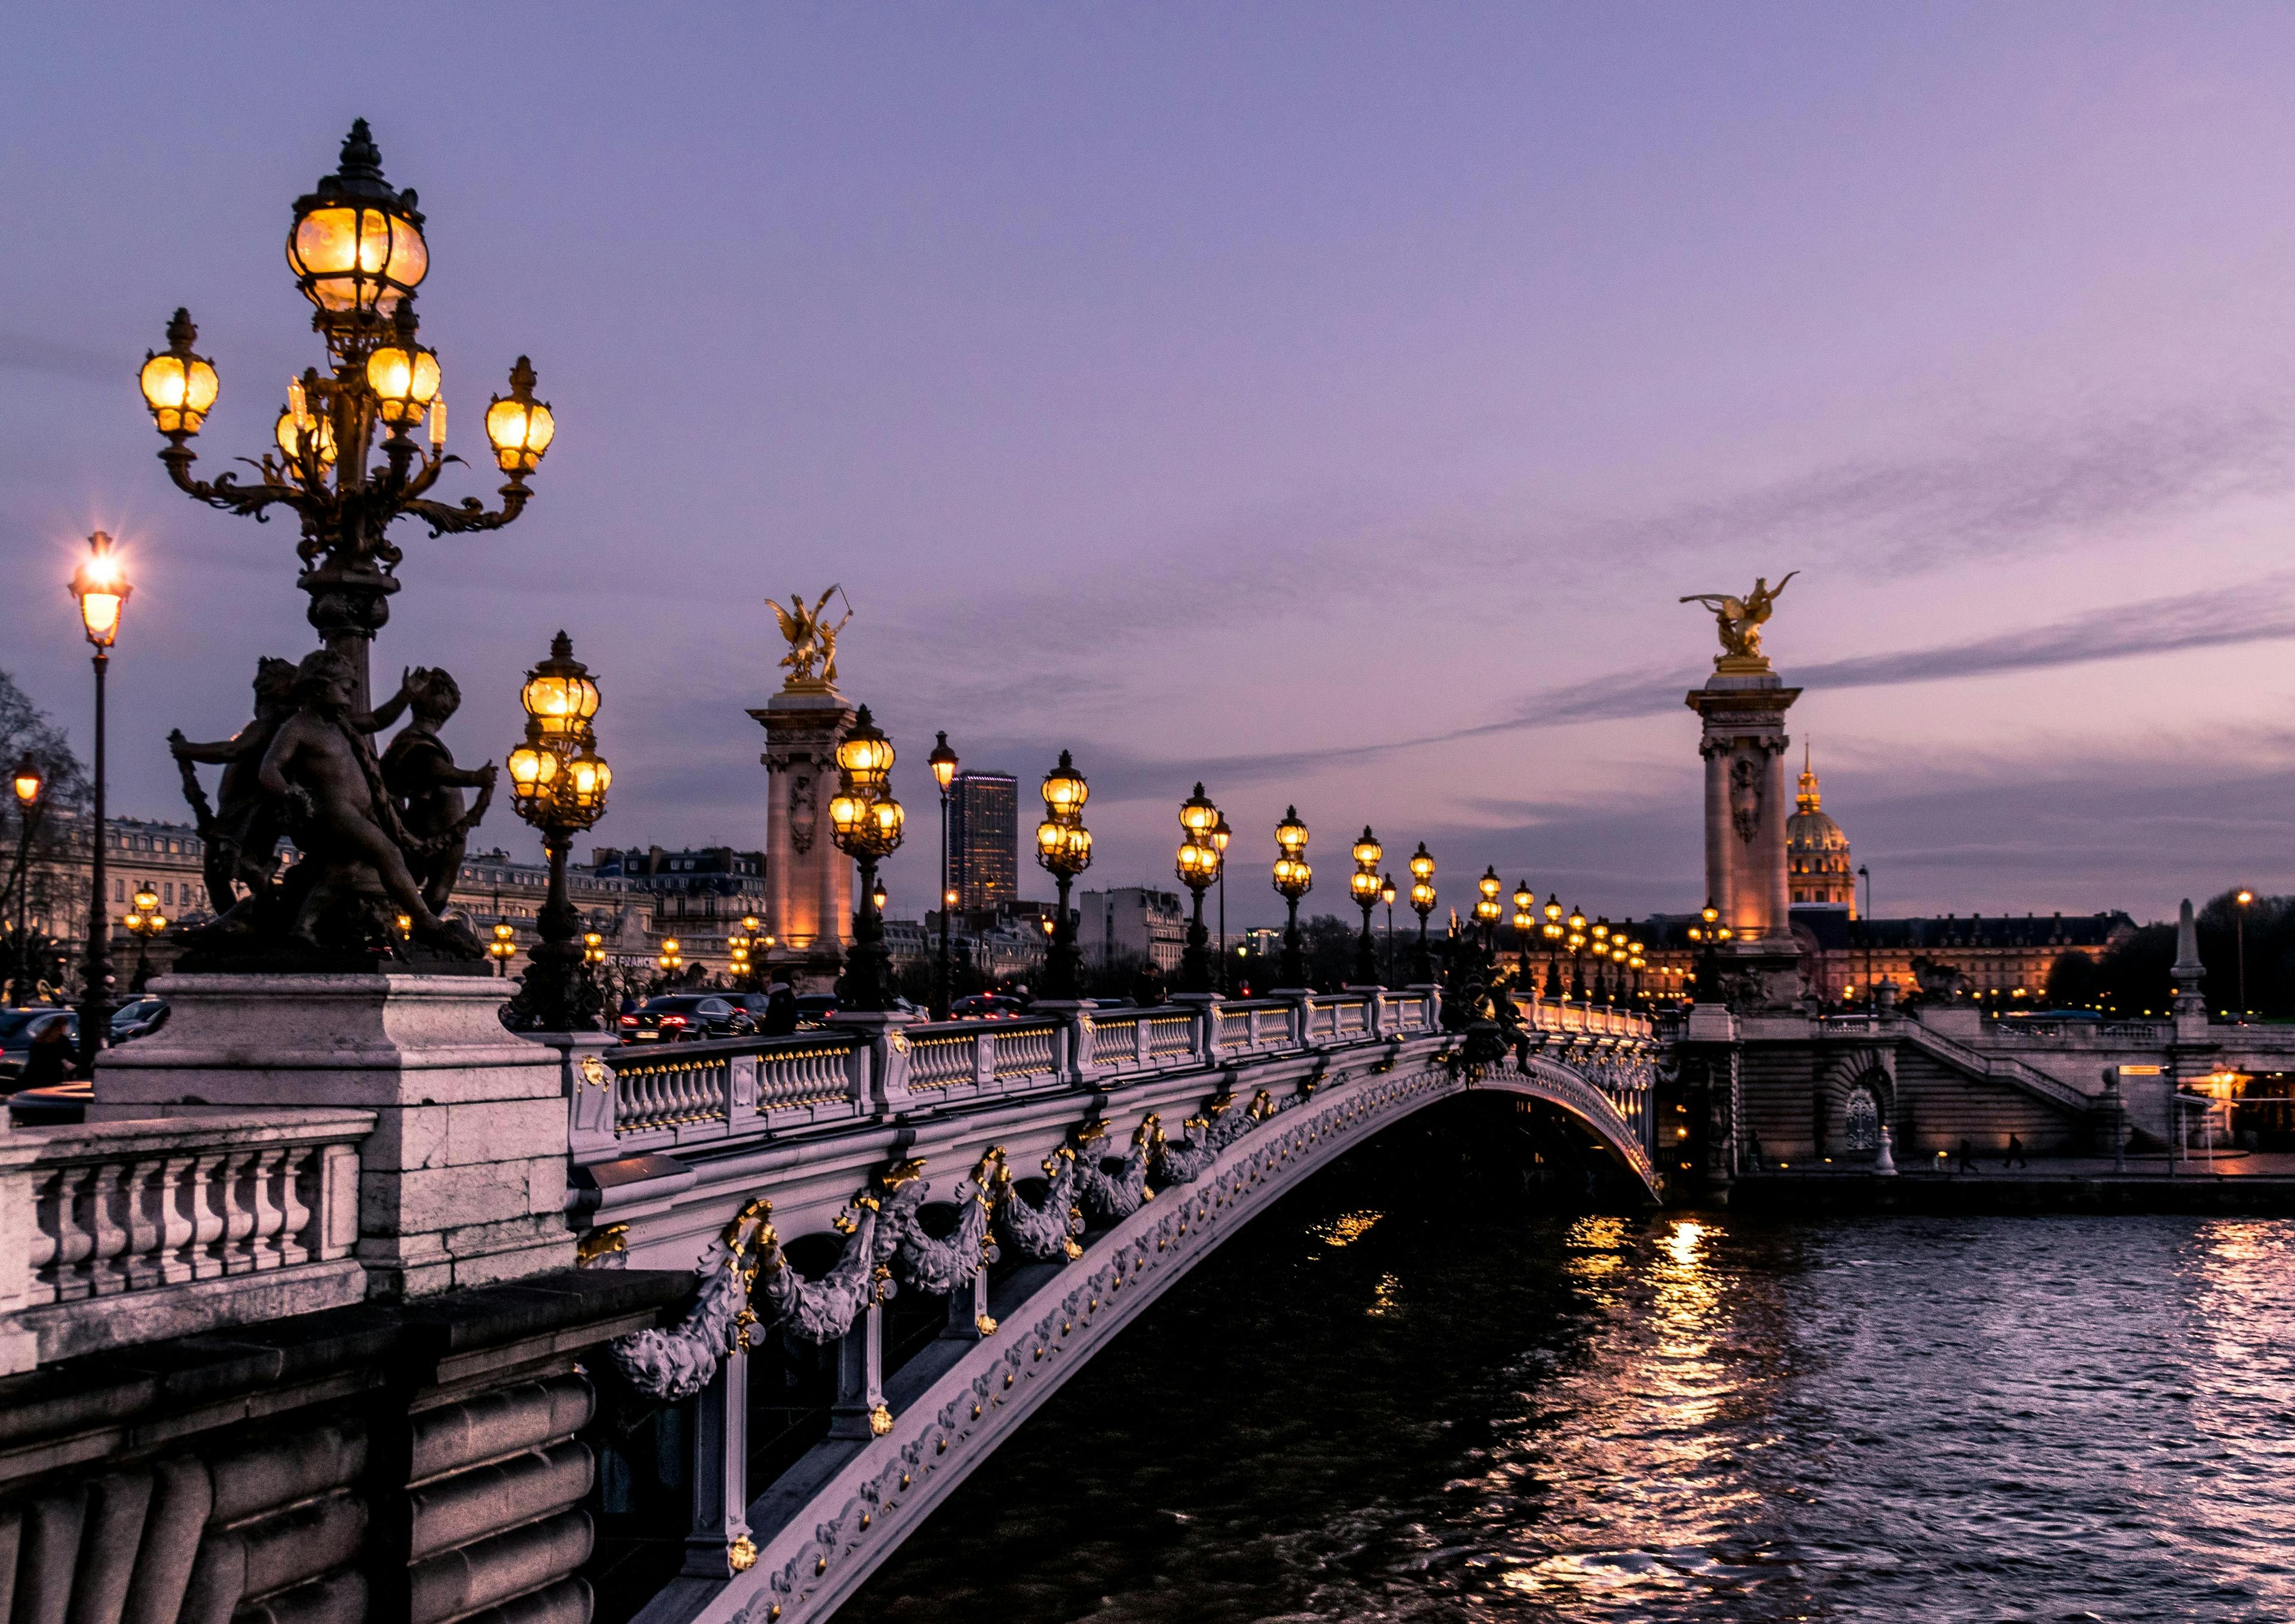 Bridge in Paris over Seine river